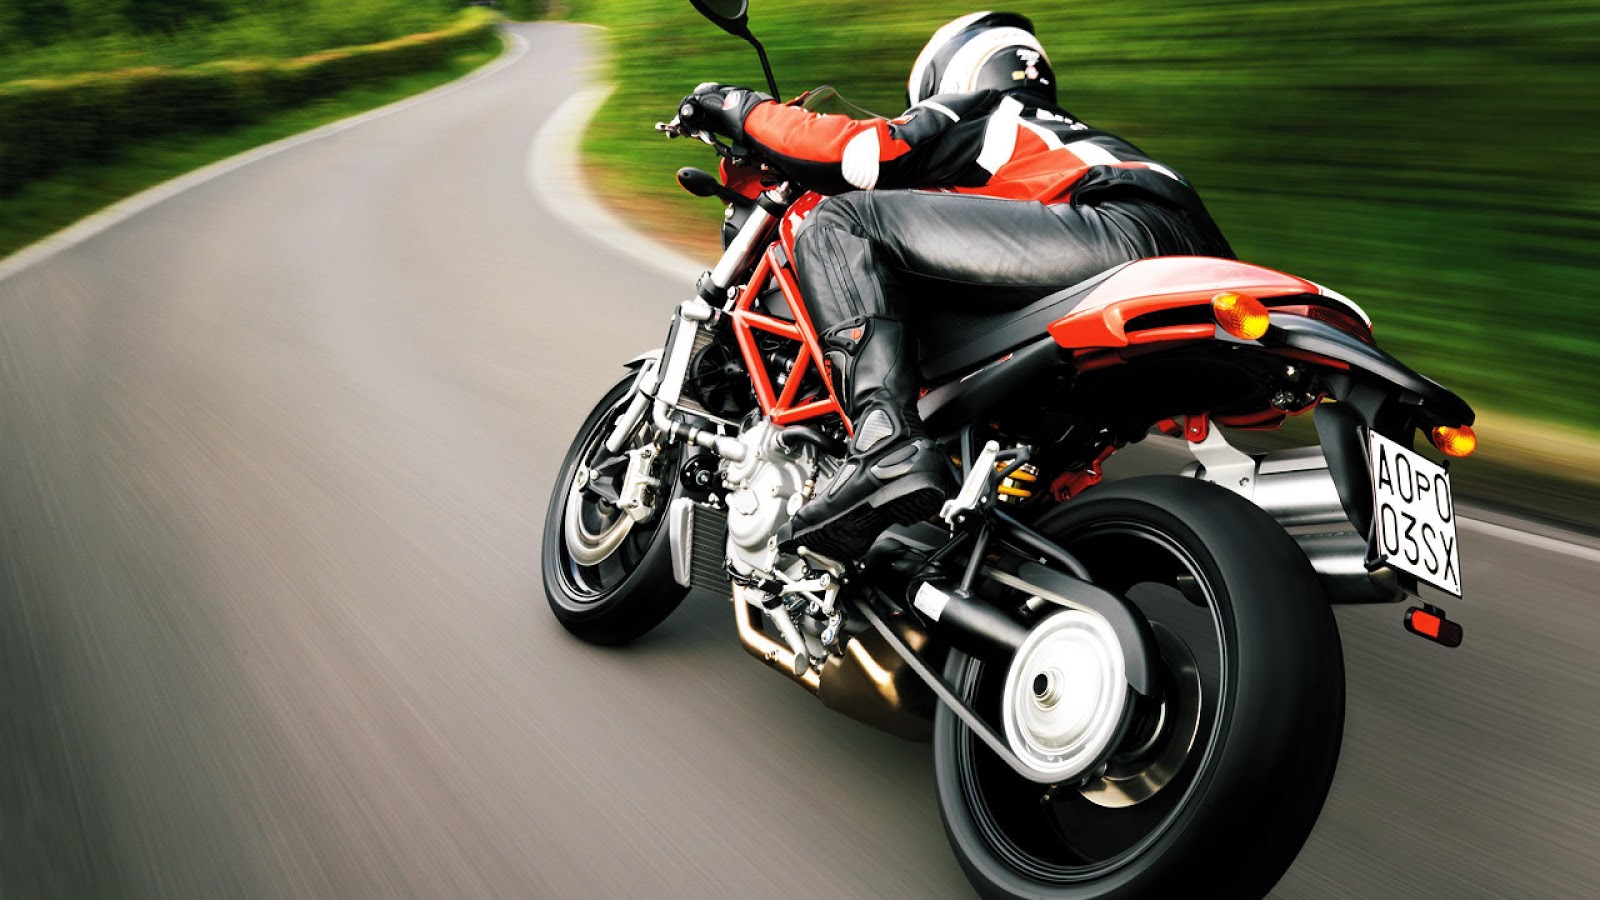 motorradbilder und hintergrundbilder,landfahrzeug,fahrzeug,motorrad,superbike rennen,motorrad fahren